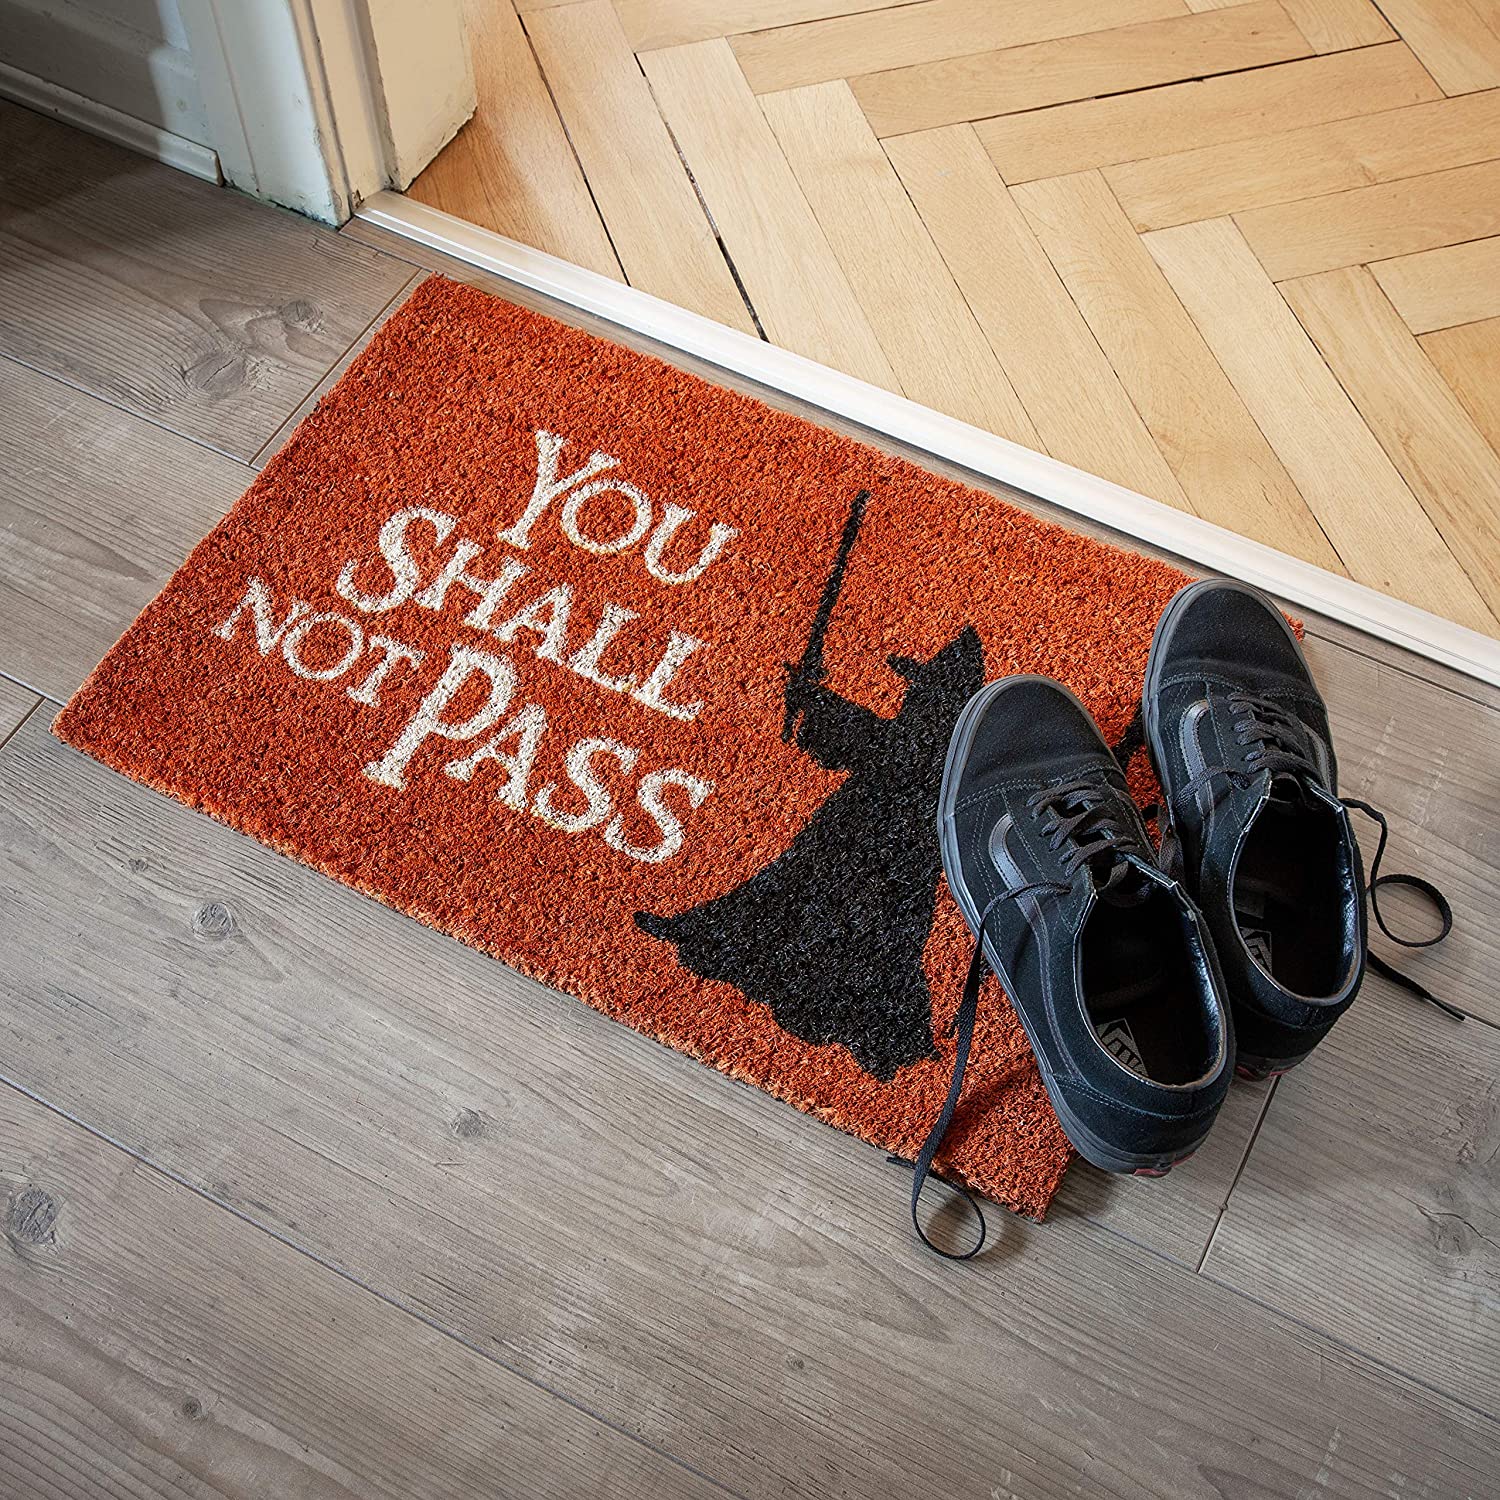 You shall not pass” written on a doormat